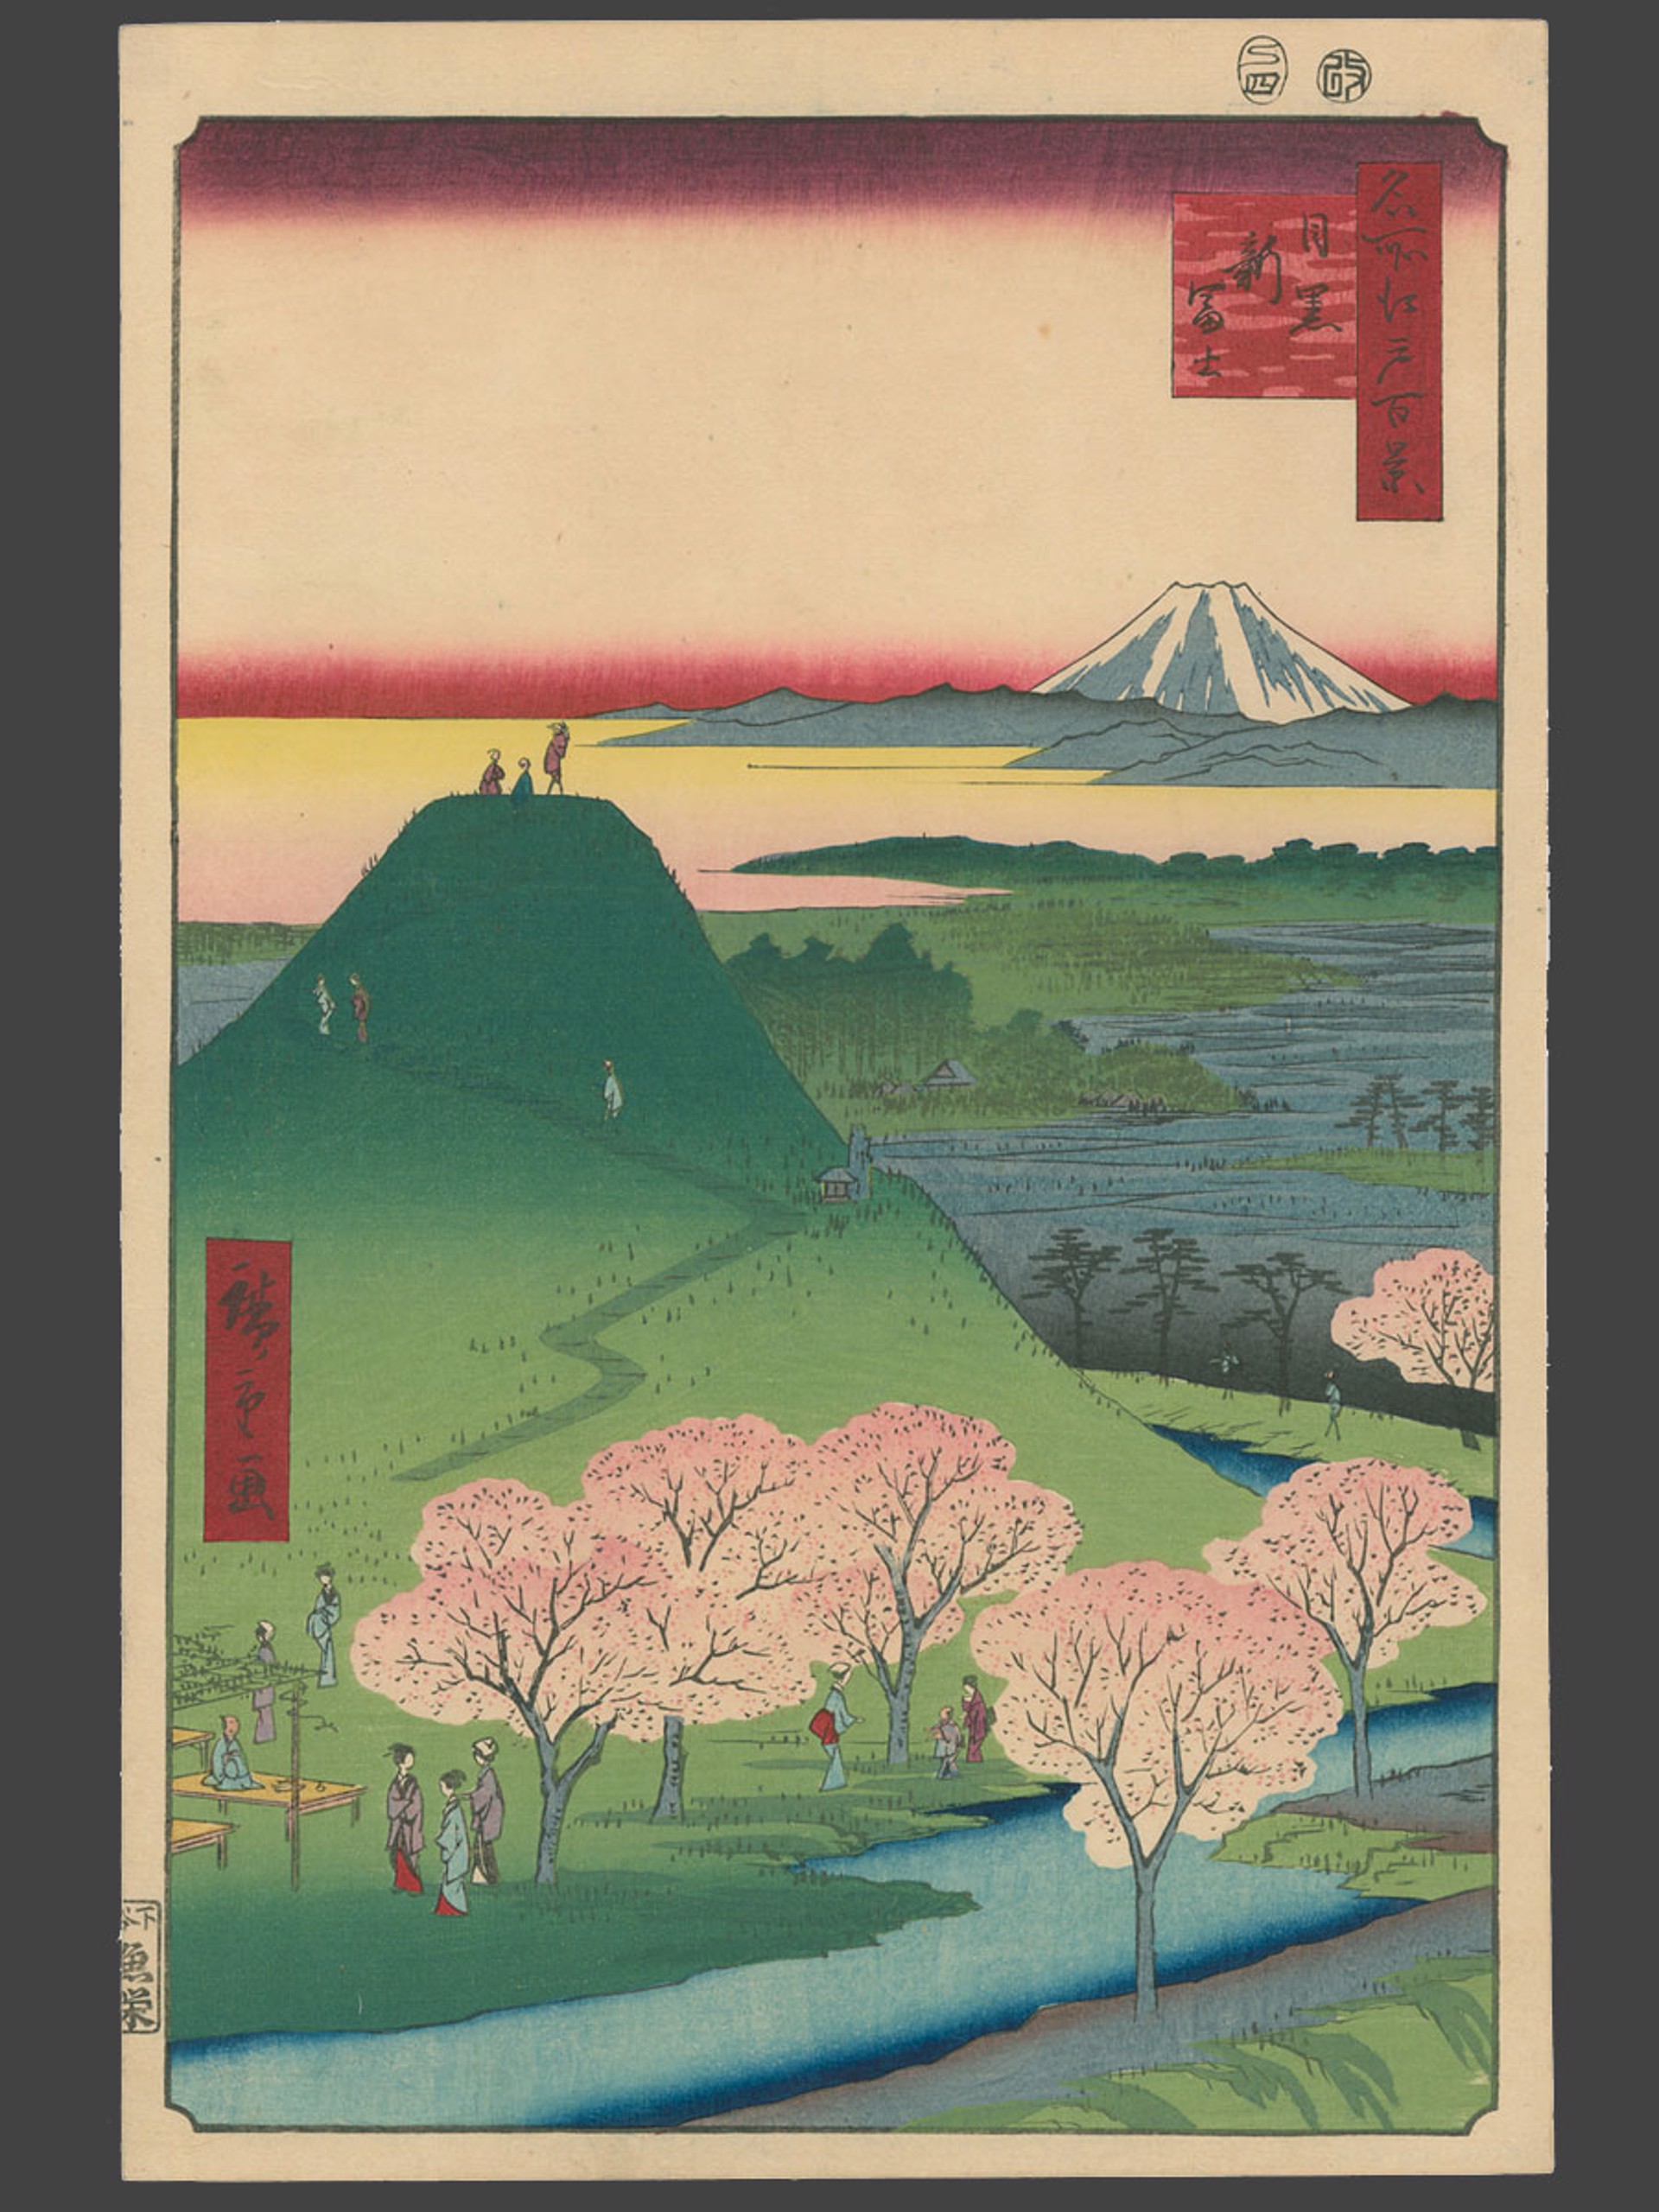 #24 The New Fuji at Meguro 100 Views of Edo by Hiroshige